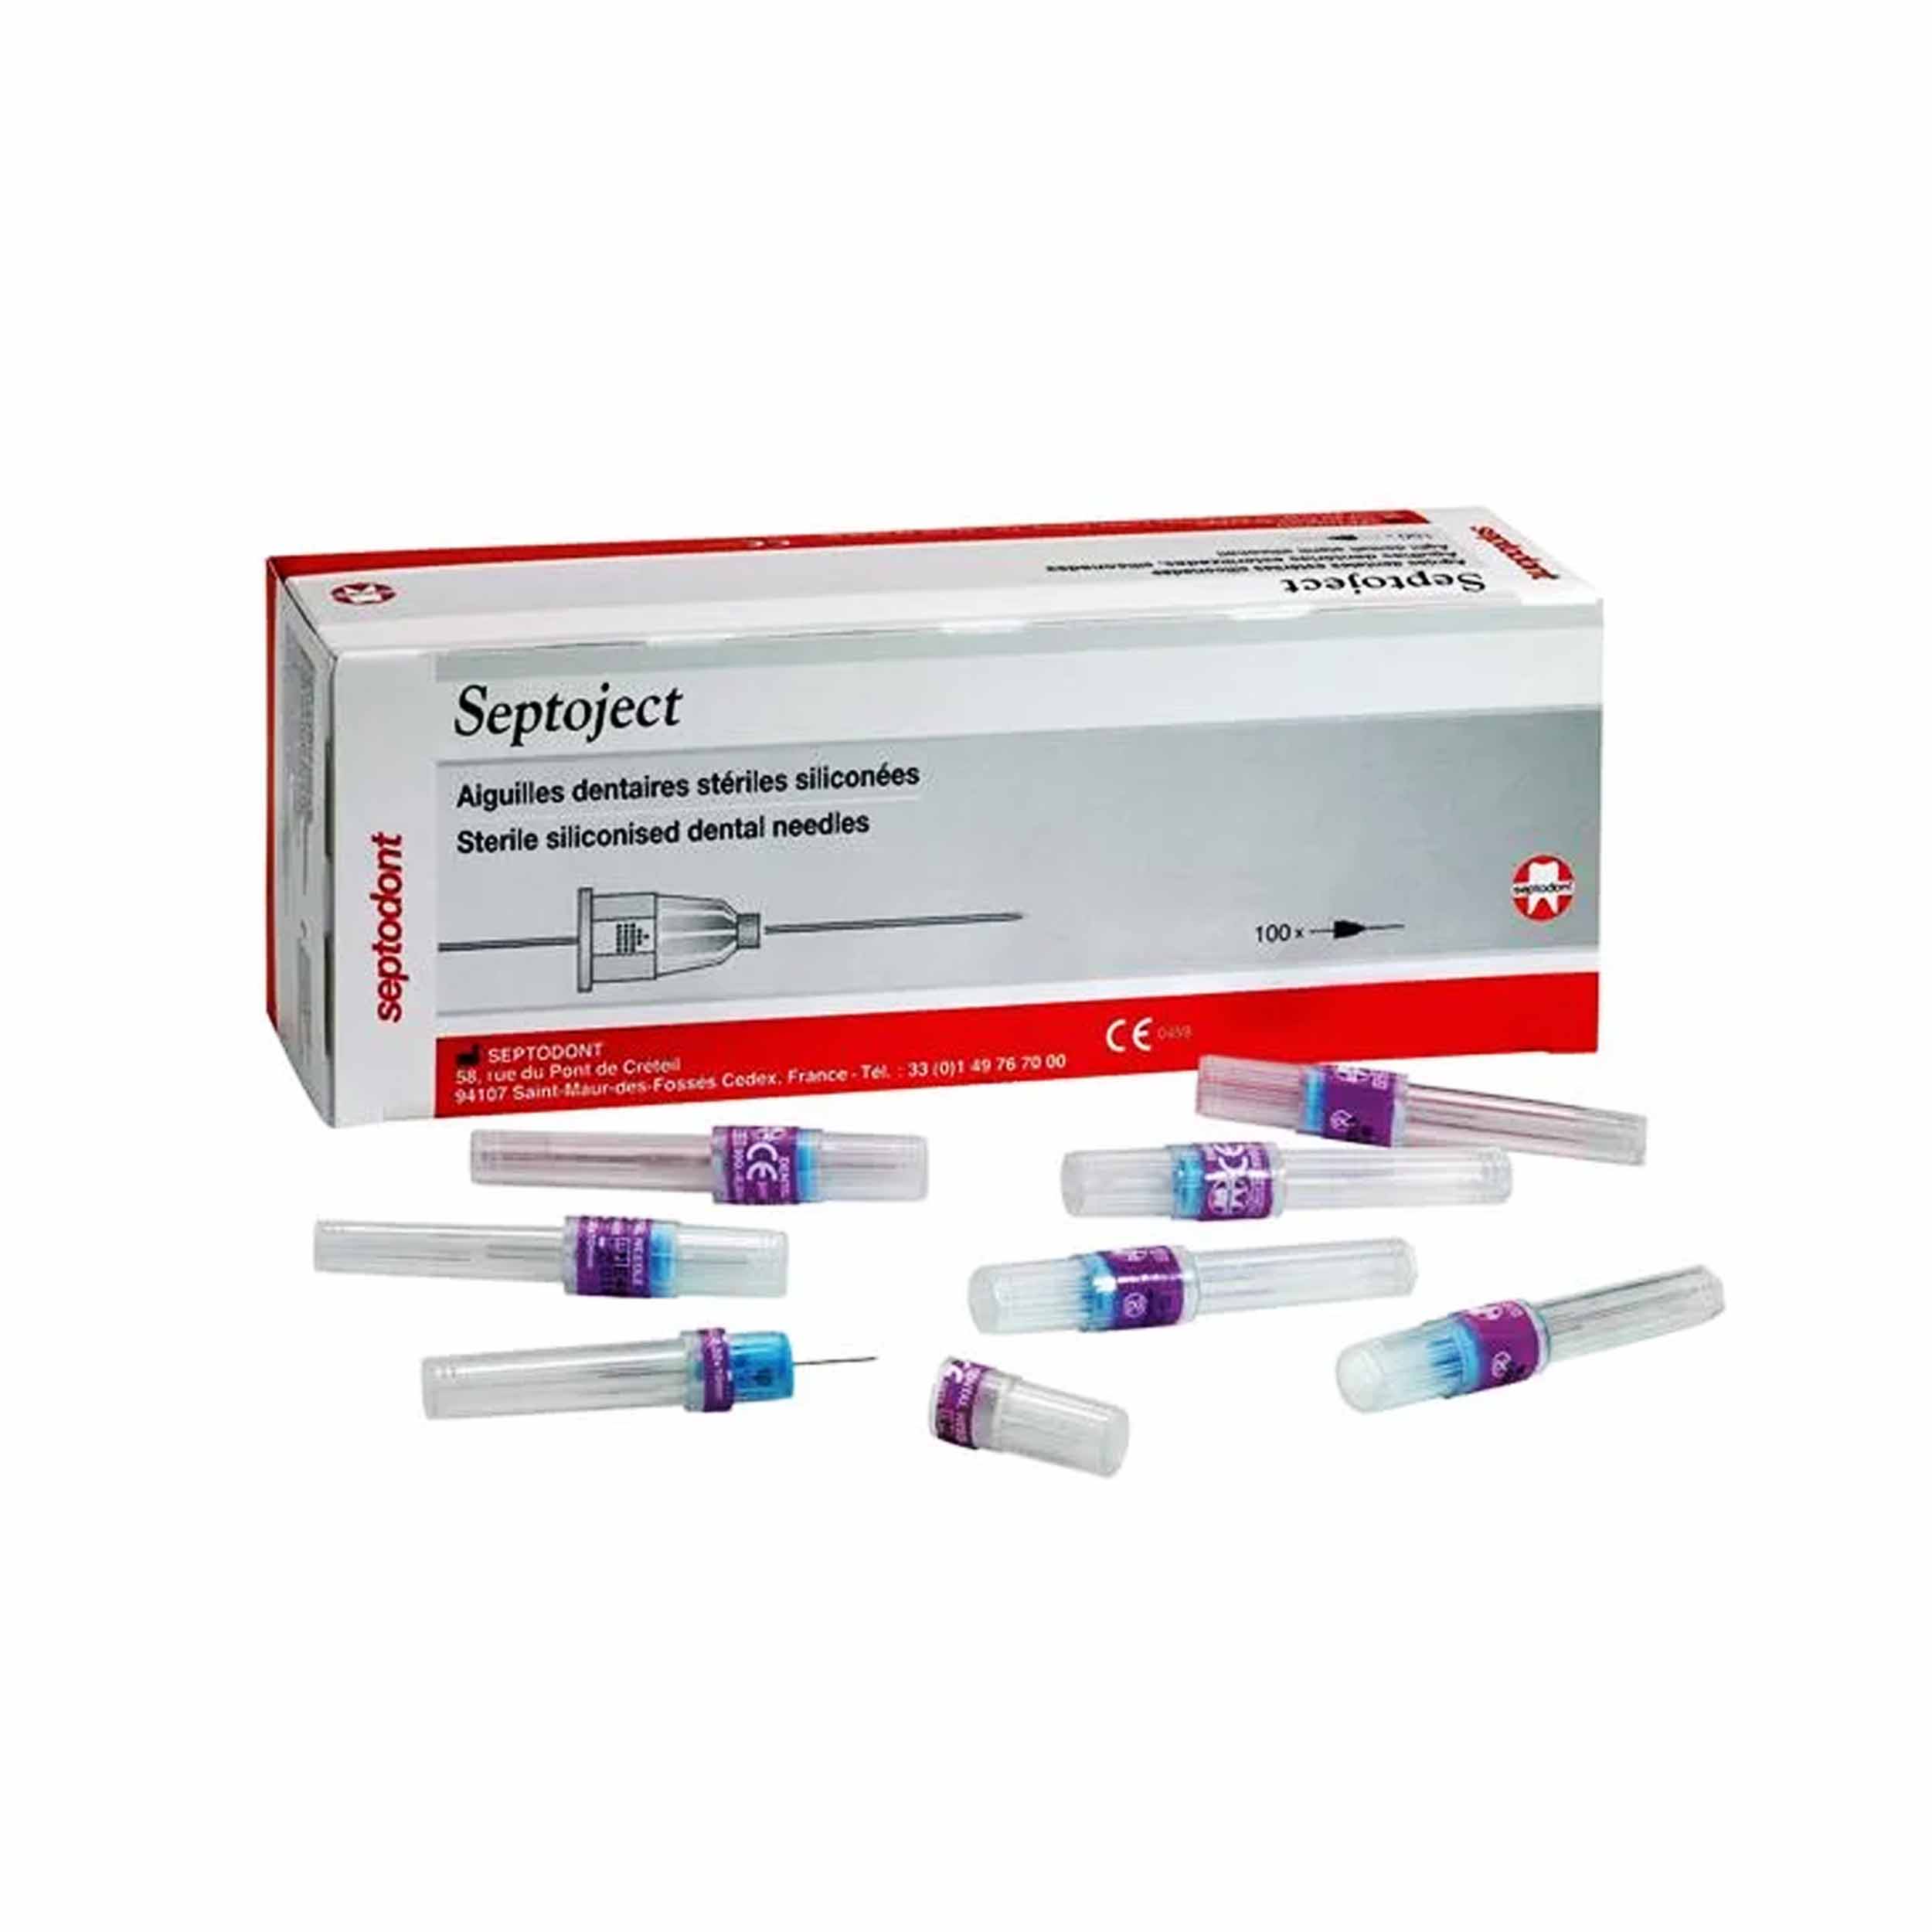 Septodont Septoject Needles For Dental Cartridge Syringe 27g/25mm